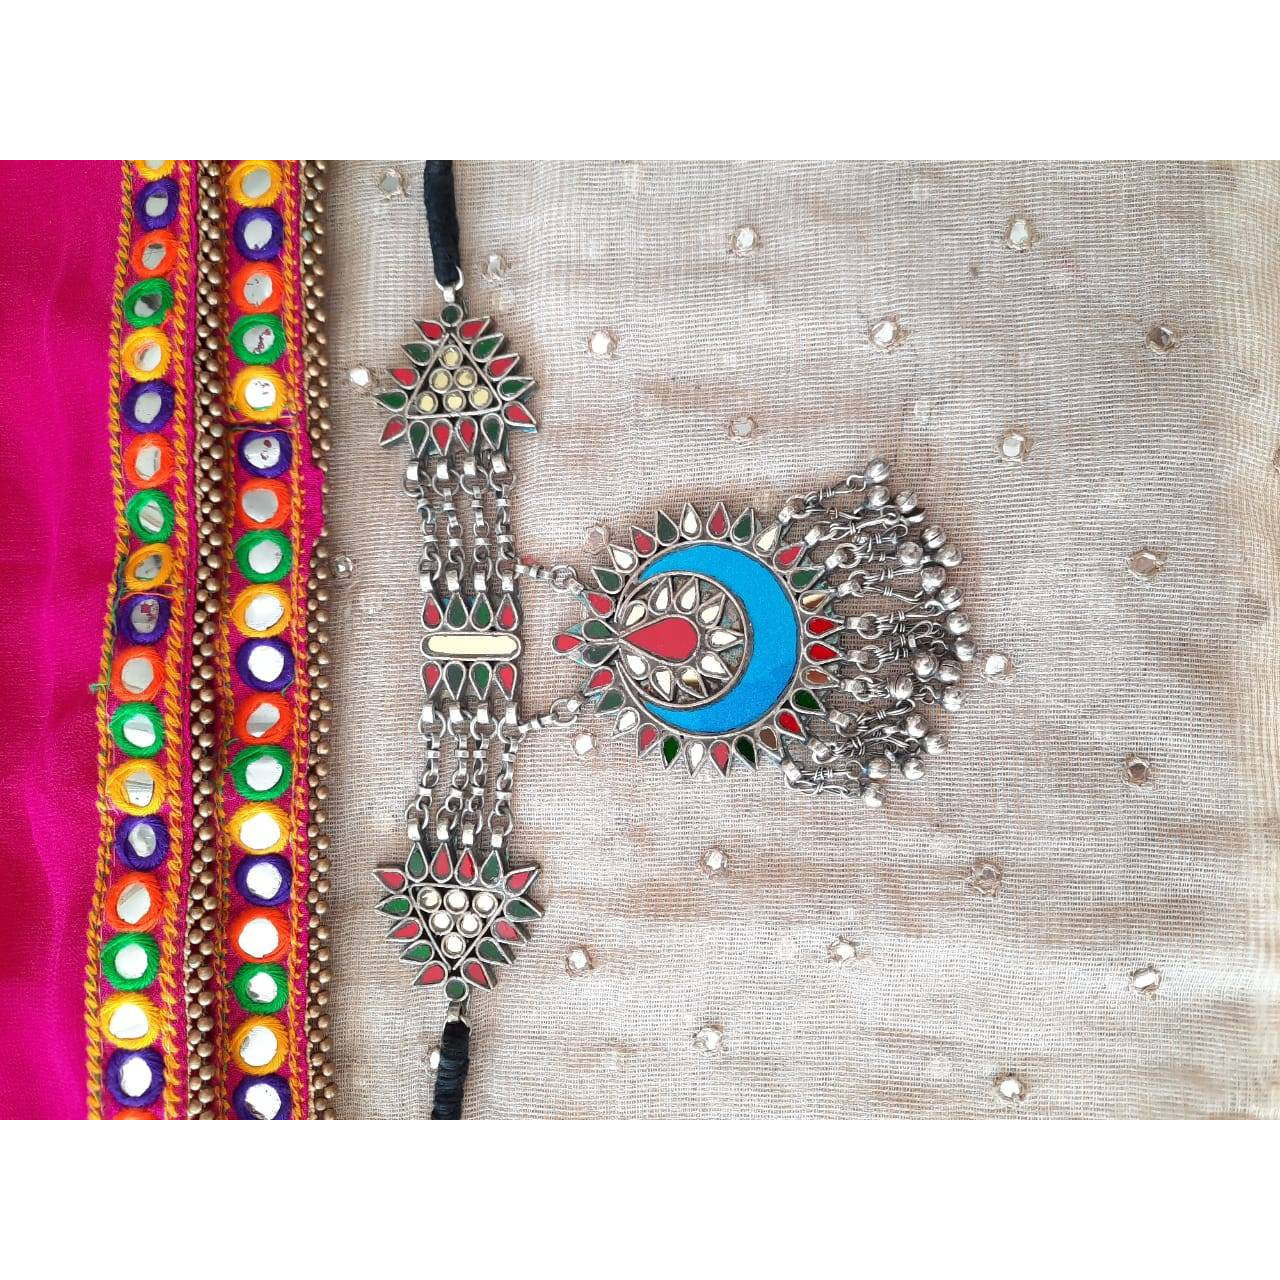 Beautiful Original Afghani Glass Work And Thread work, Statement Choker Set,Gypsy Style Choker, Boho Jewelry, Trendy Choker Set, Banjara Set